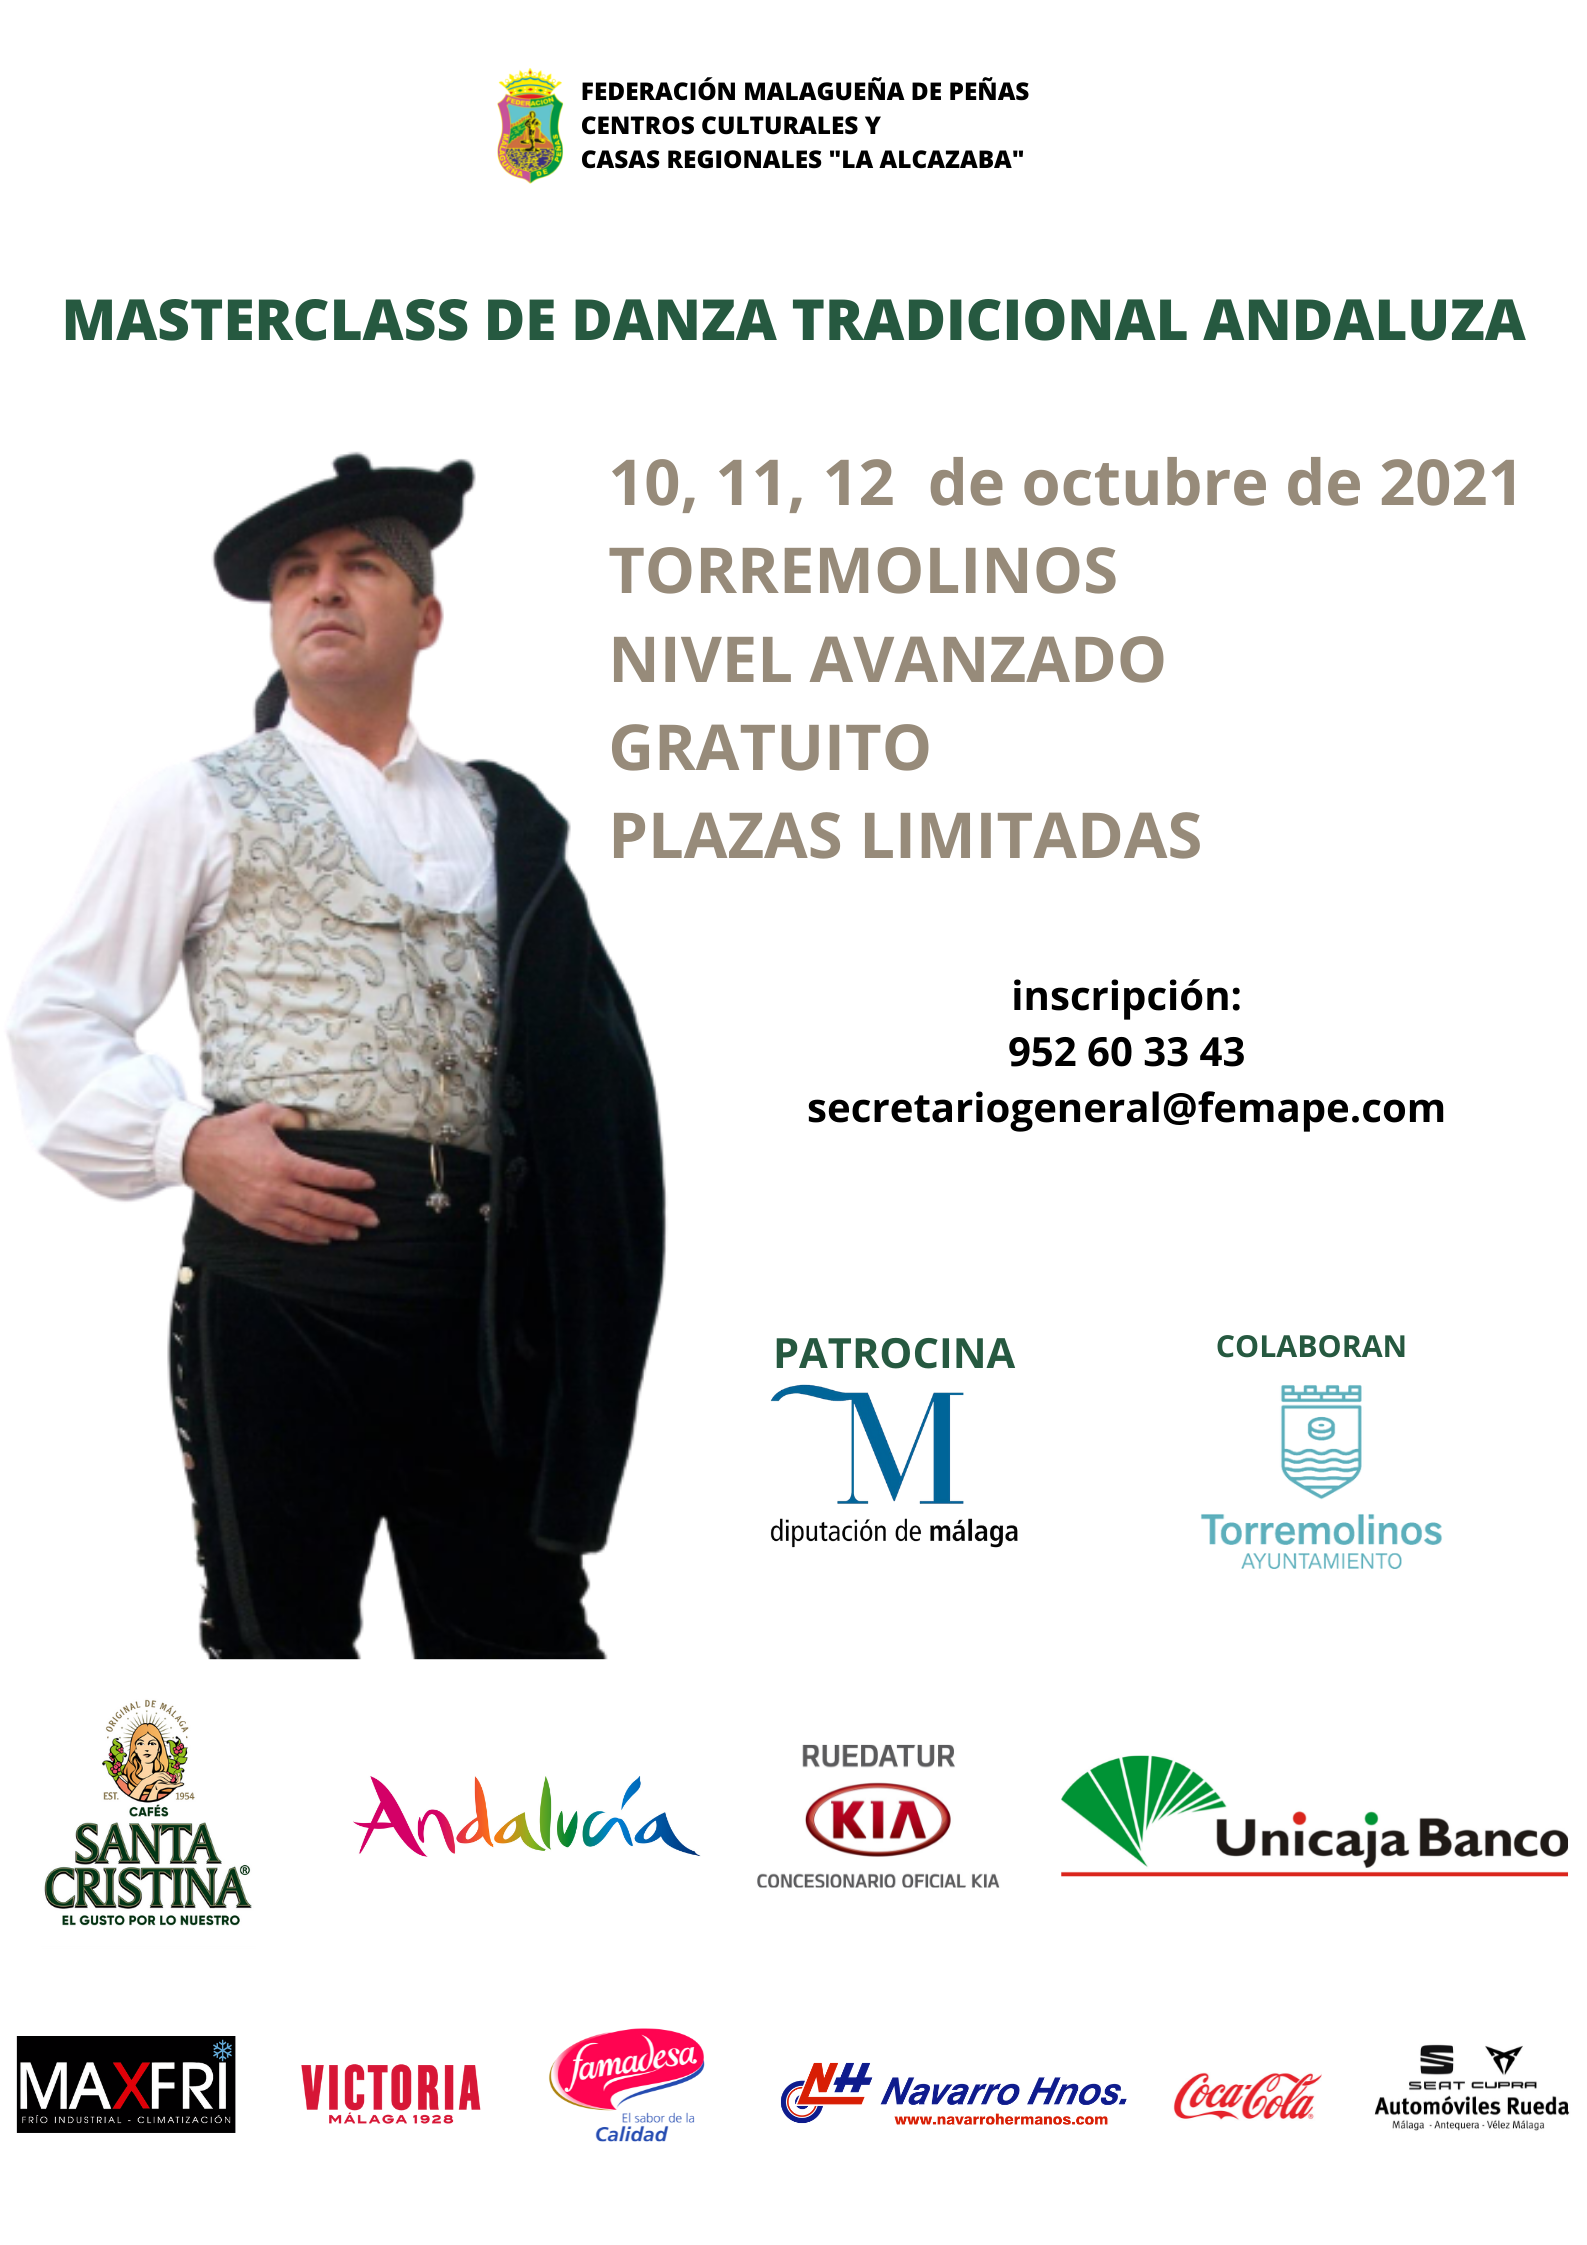 Masterclass de Danza Tradicional Andaluza